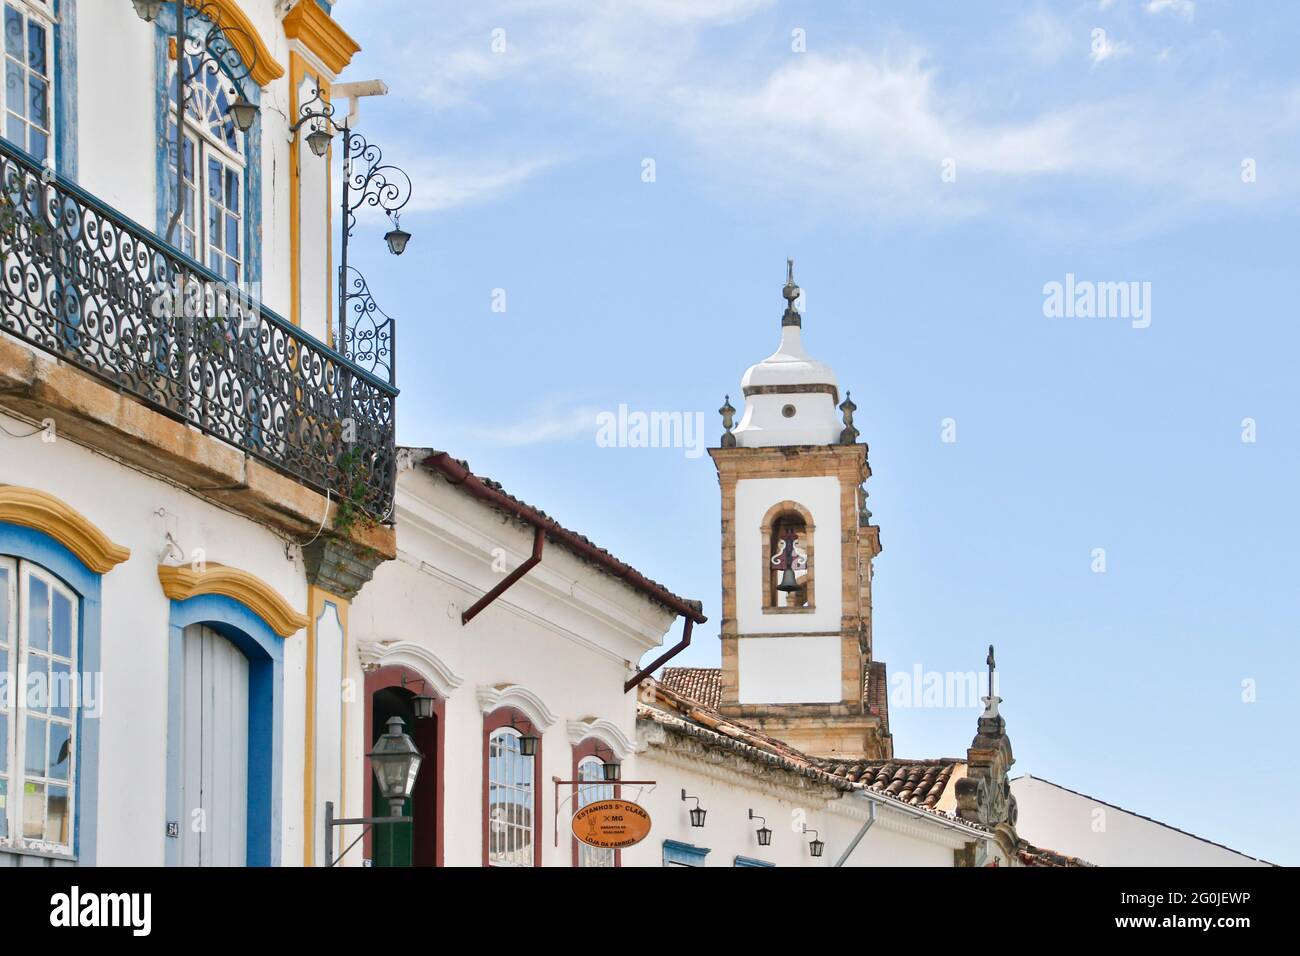 Sao Joao del-Rei, Minas Gerais, Brasilien - 25. Mai 2019: Häuser und charakteristische Architektur im historischen Sao Joao del-Rei, Innenraum von Minas Stockfoto